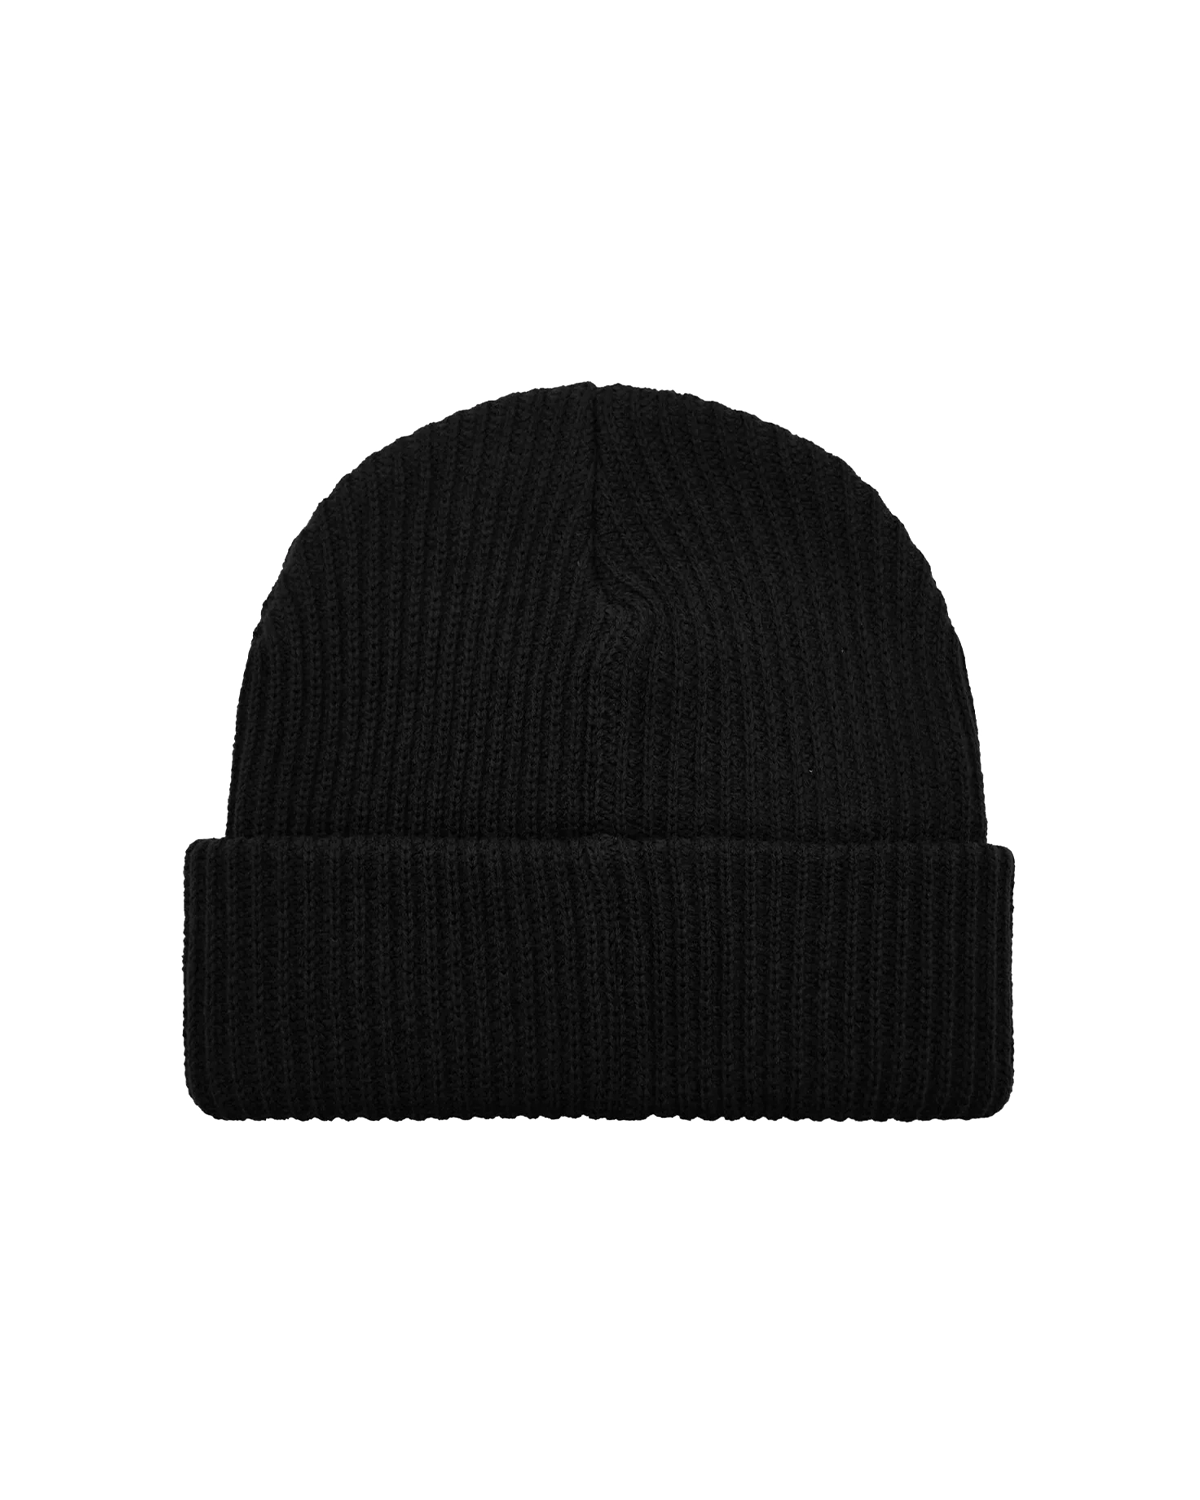 Hat 06 Black